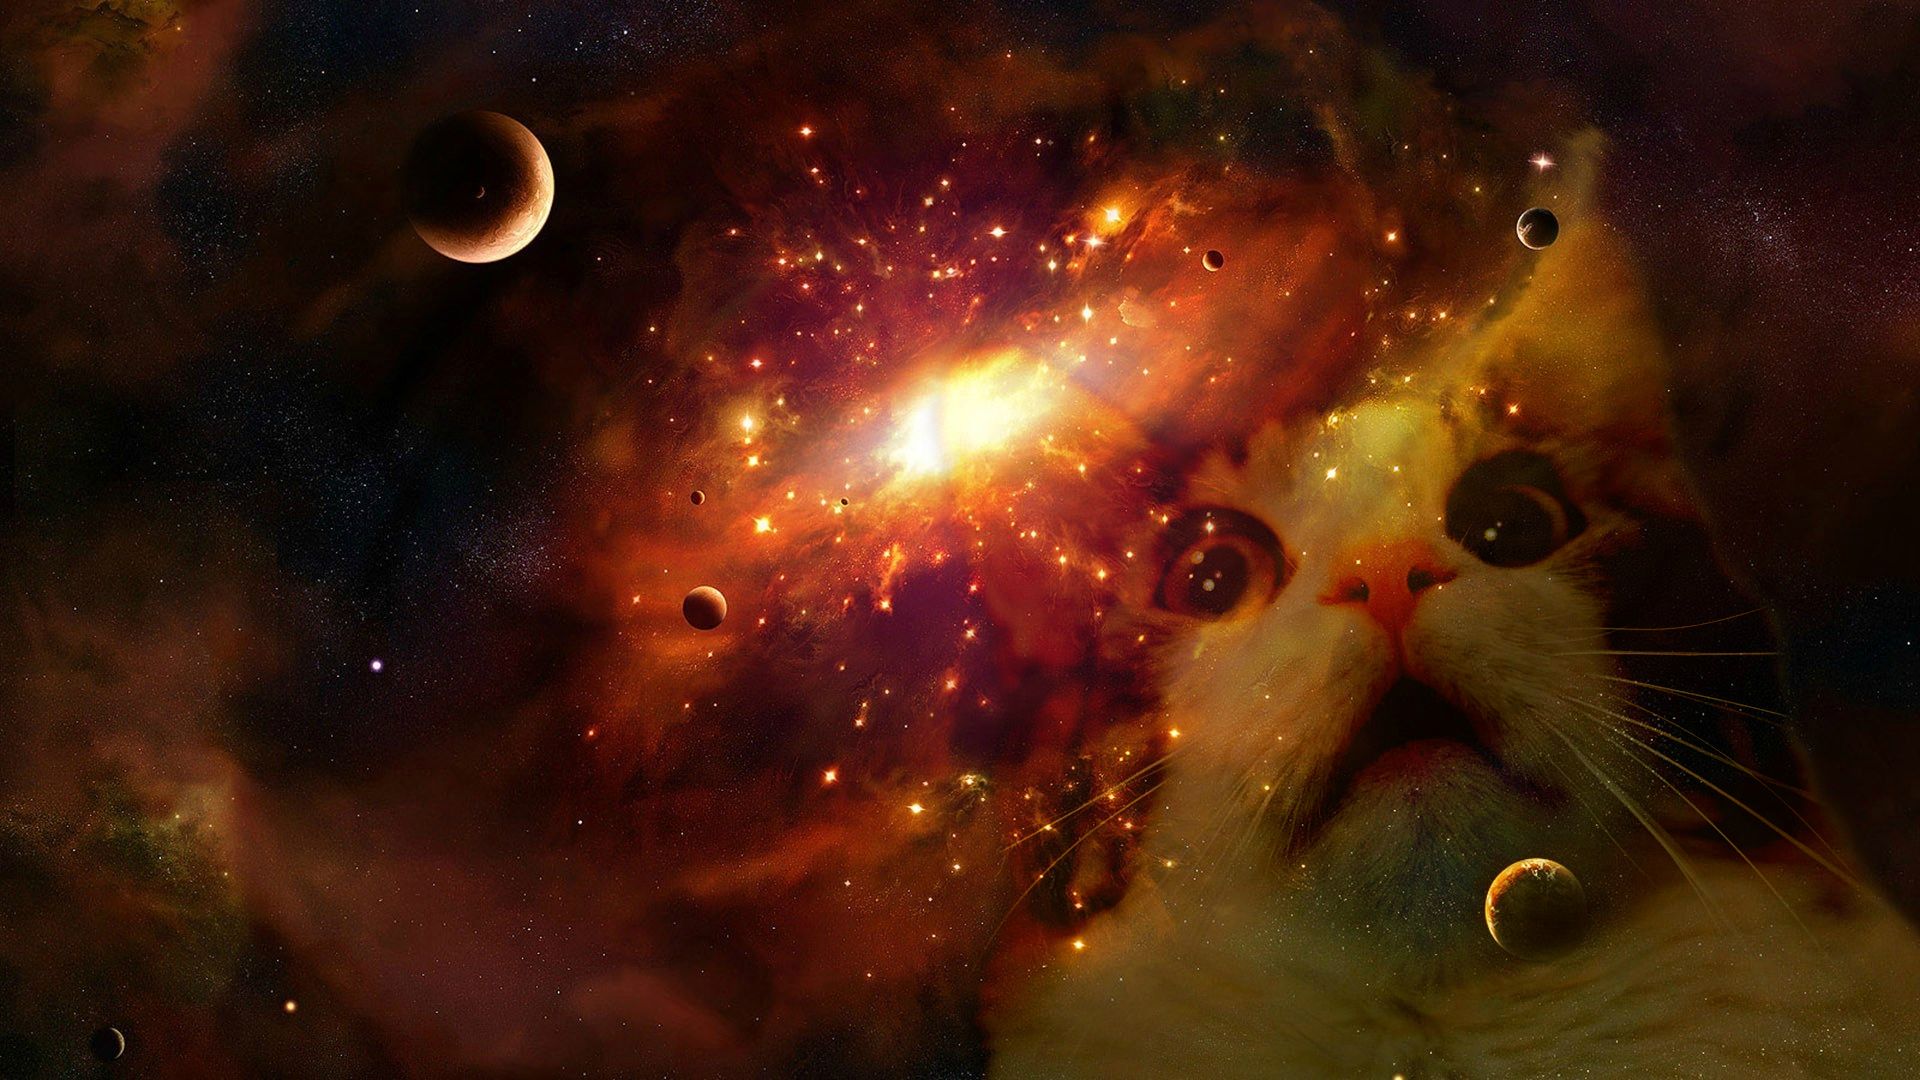 Space cat wallpaper